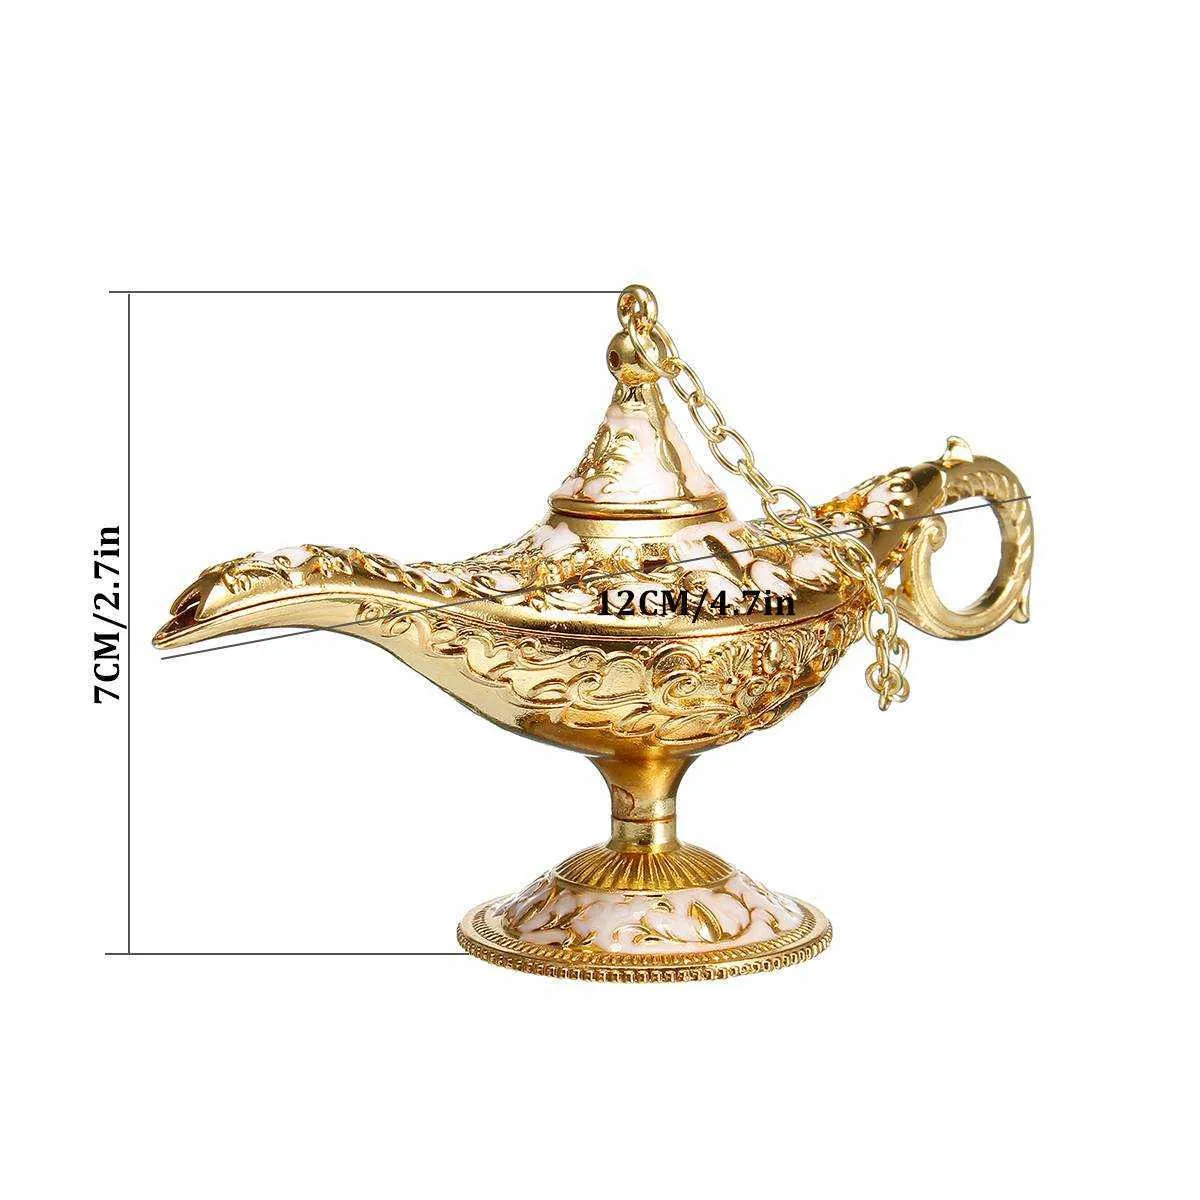 Lampe Aladdin traditionnelle ajourée, conte de fées magique, théière rétro, accessoires de décoration pour la maison, X07109712670